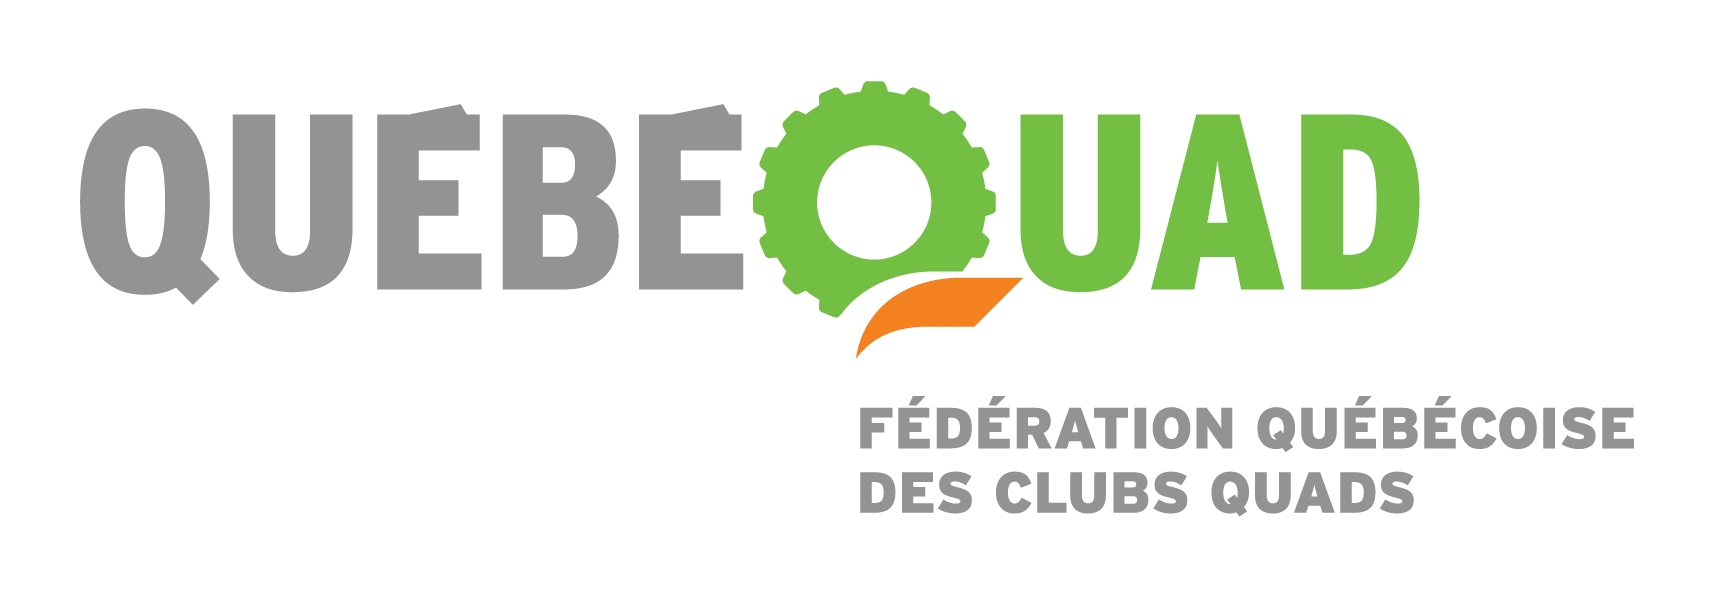 Épisode 1 Chibougamau - La Fédération Québécoise des Clubs Quads